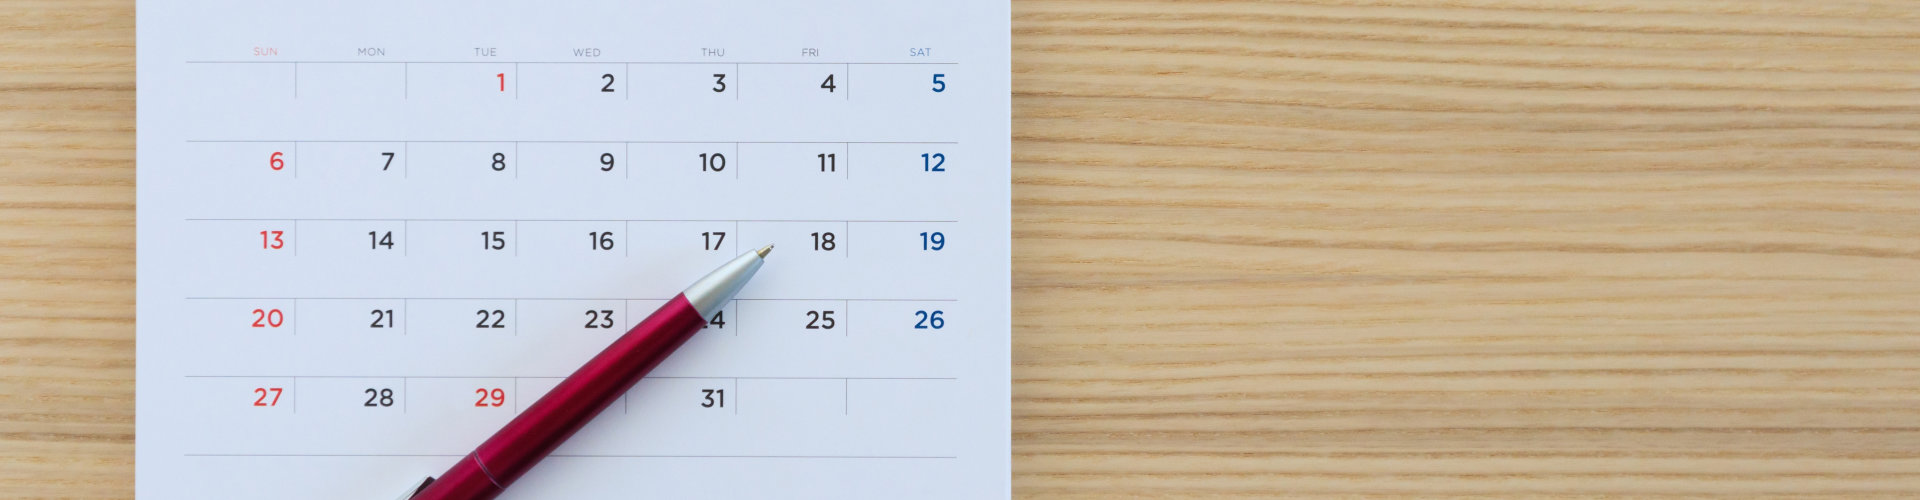 calendar and a pen